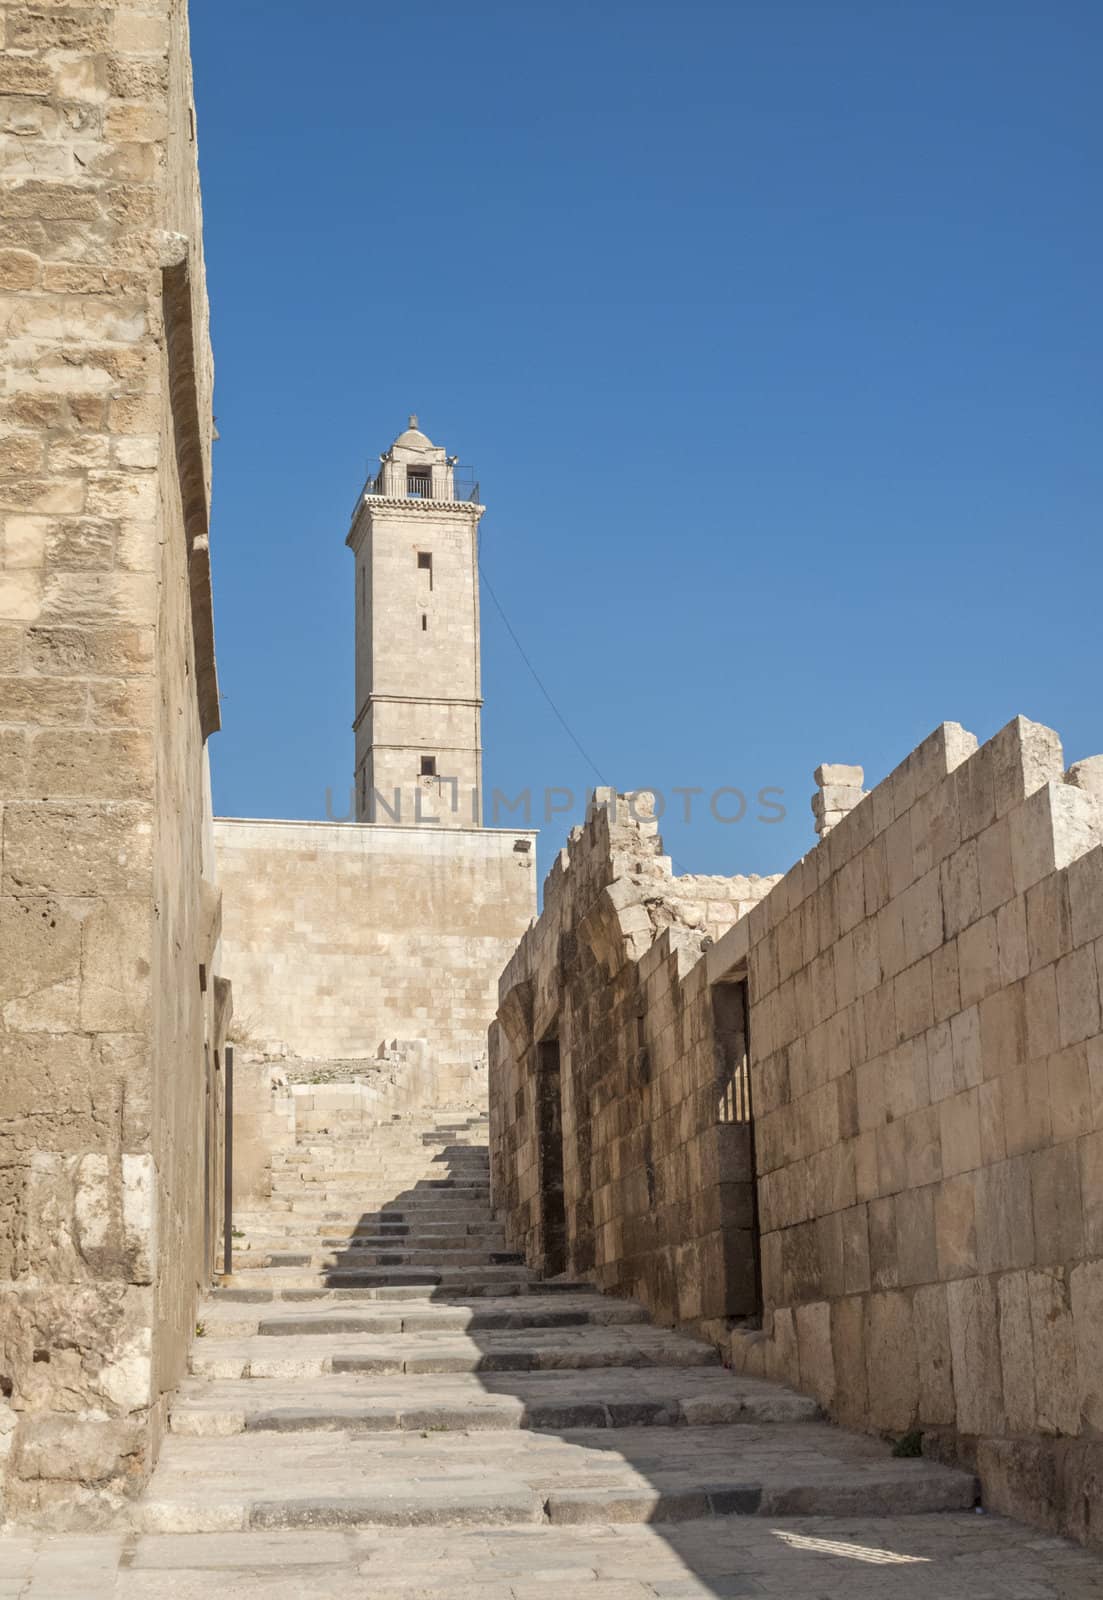 aleppo ancient citadel in syria